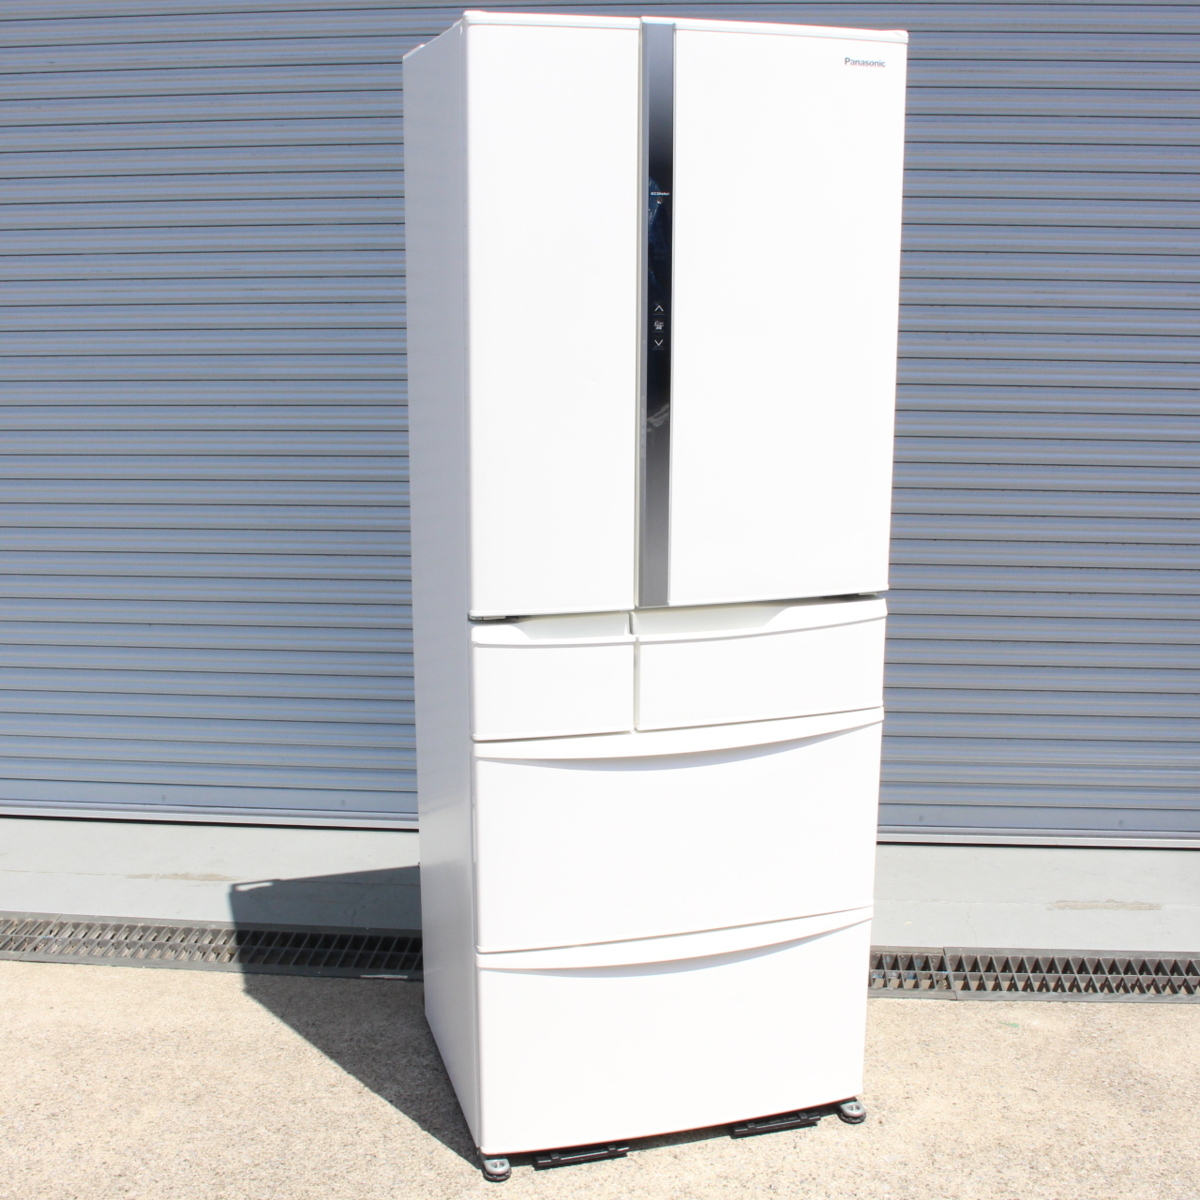 パナソニック ノンフロン冷凍冷蔵庫 NR-FV45S1-W 6ドア フレンチドア 451L 2016年製